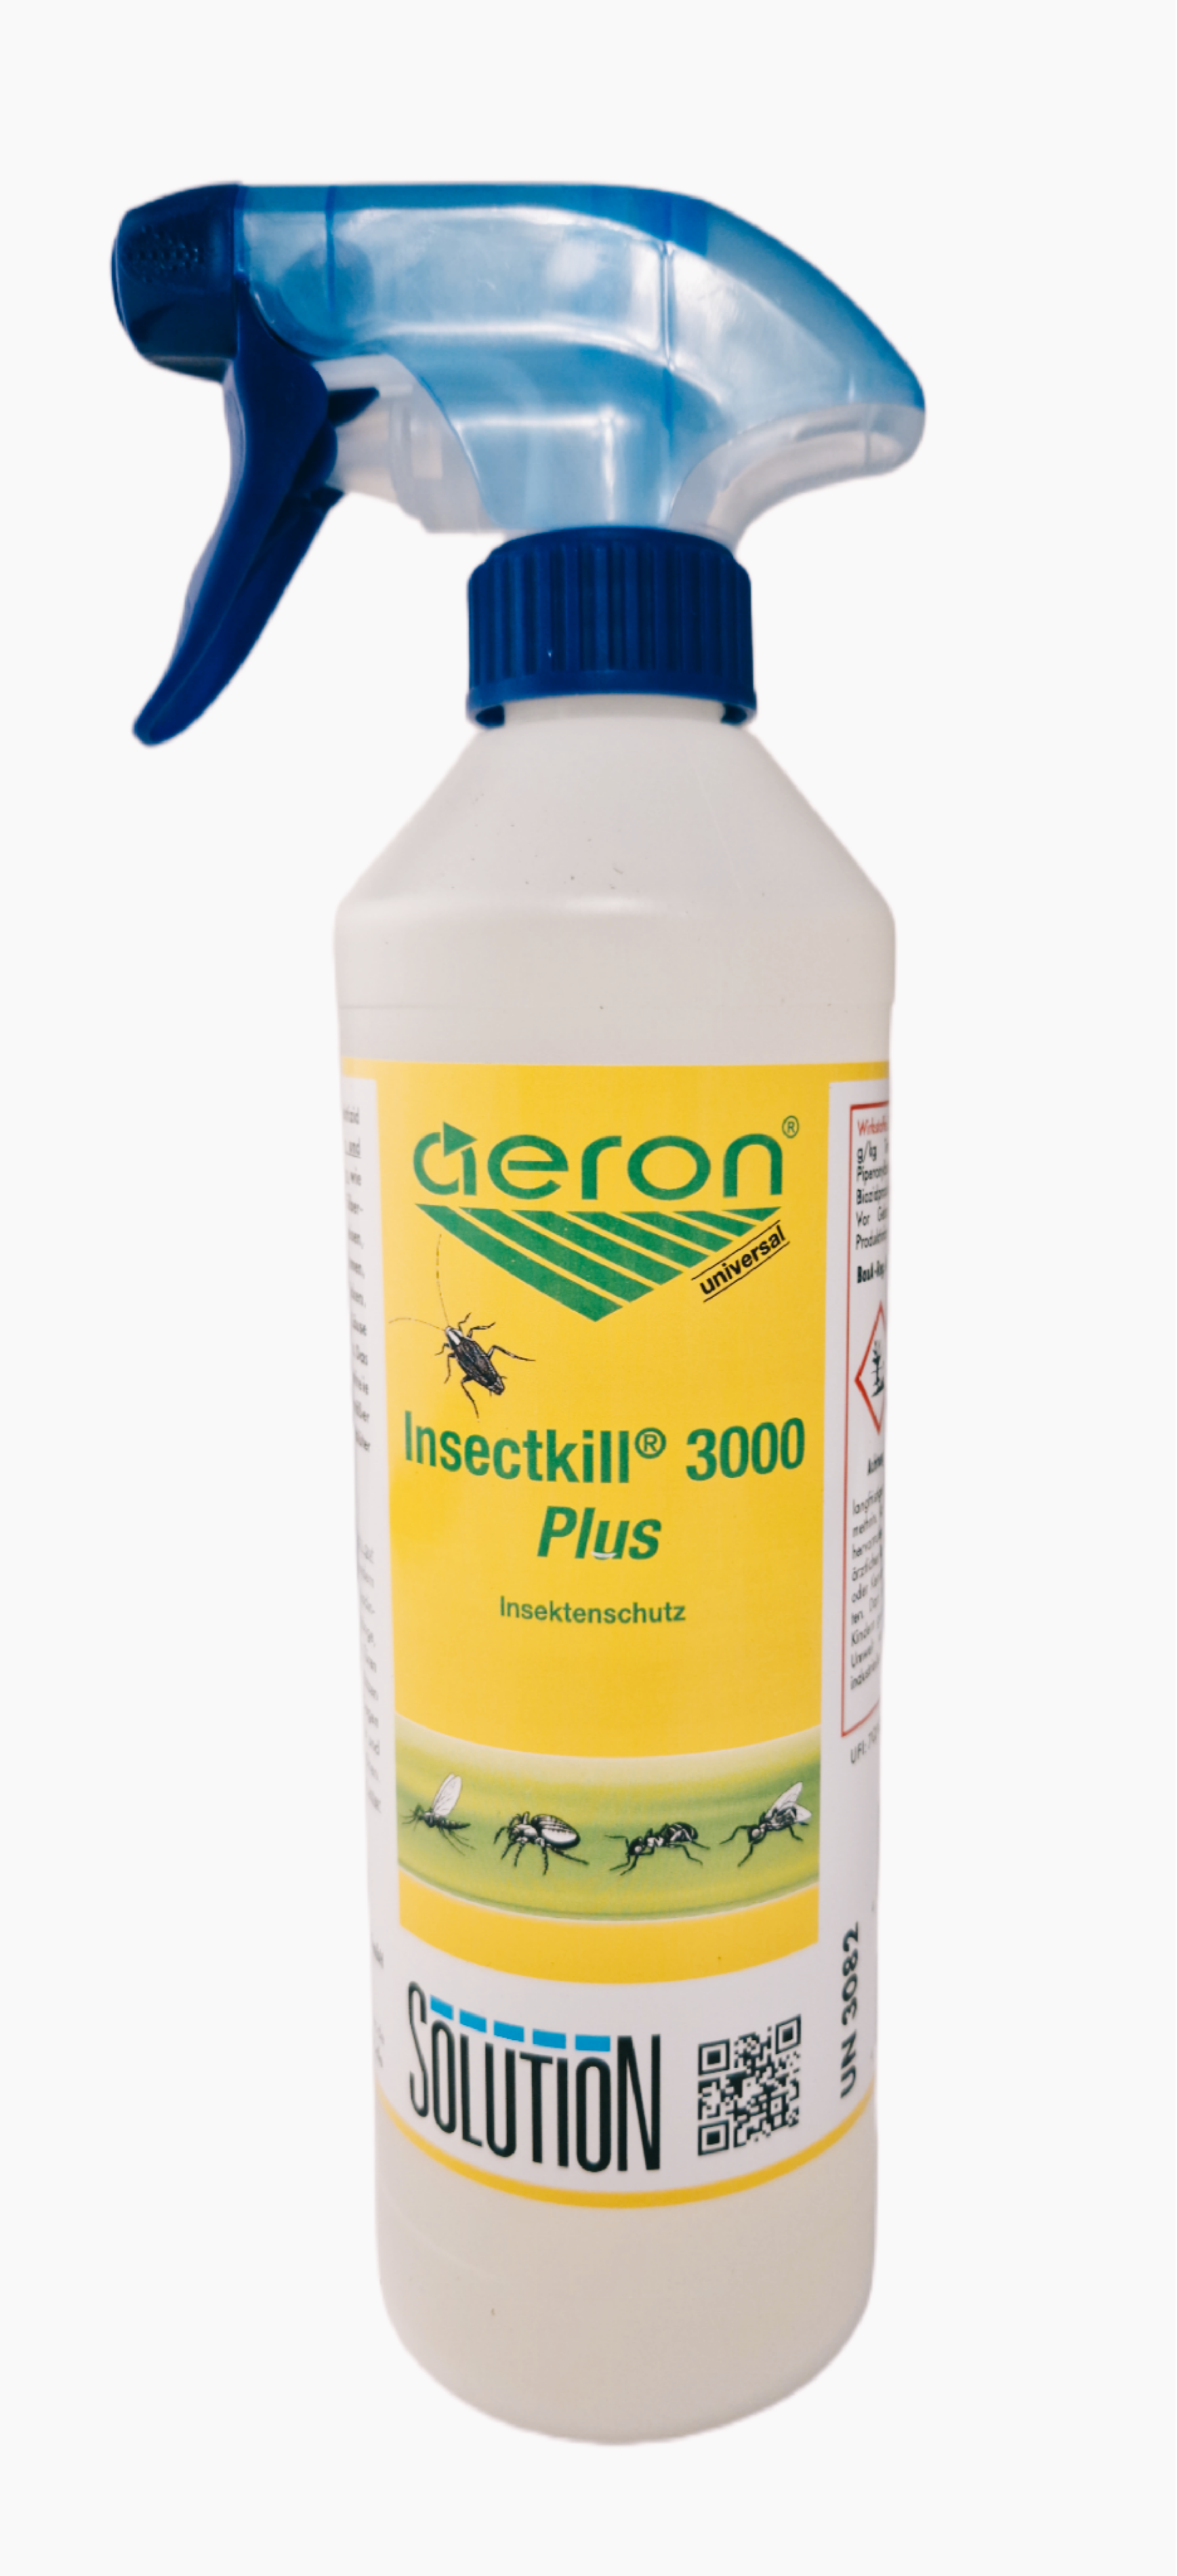 SOLUTION Glöckner - Aeron Insektenschutz Insectkill 3000 (plus) - 500ml